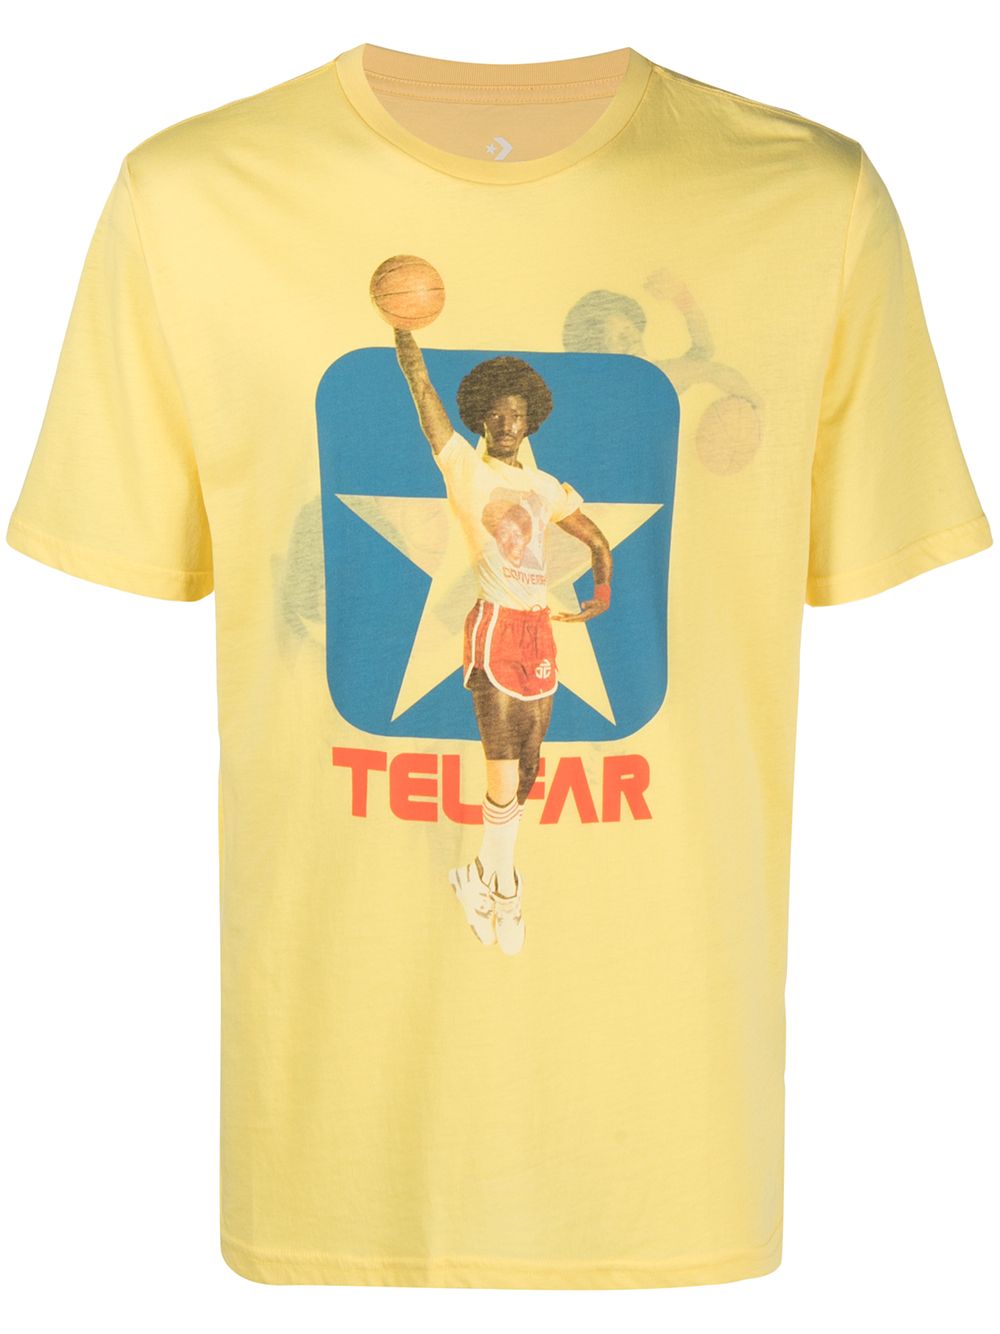 фото Telfar футболка basket ball с короткими рукавами